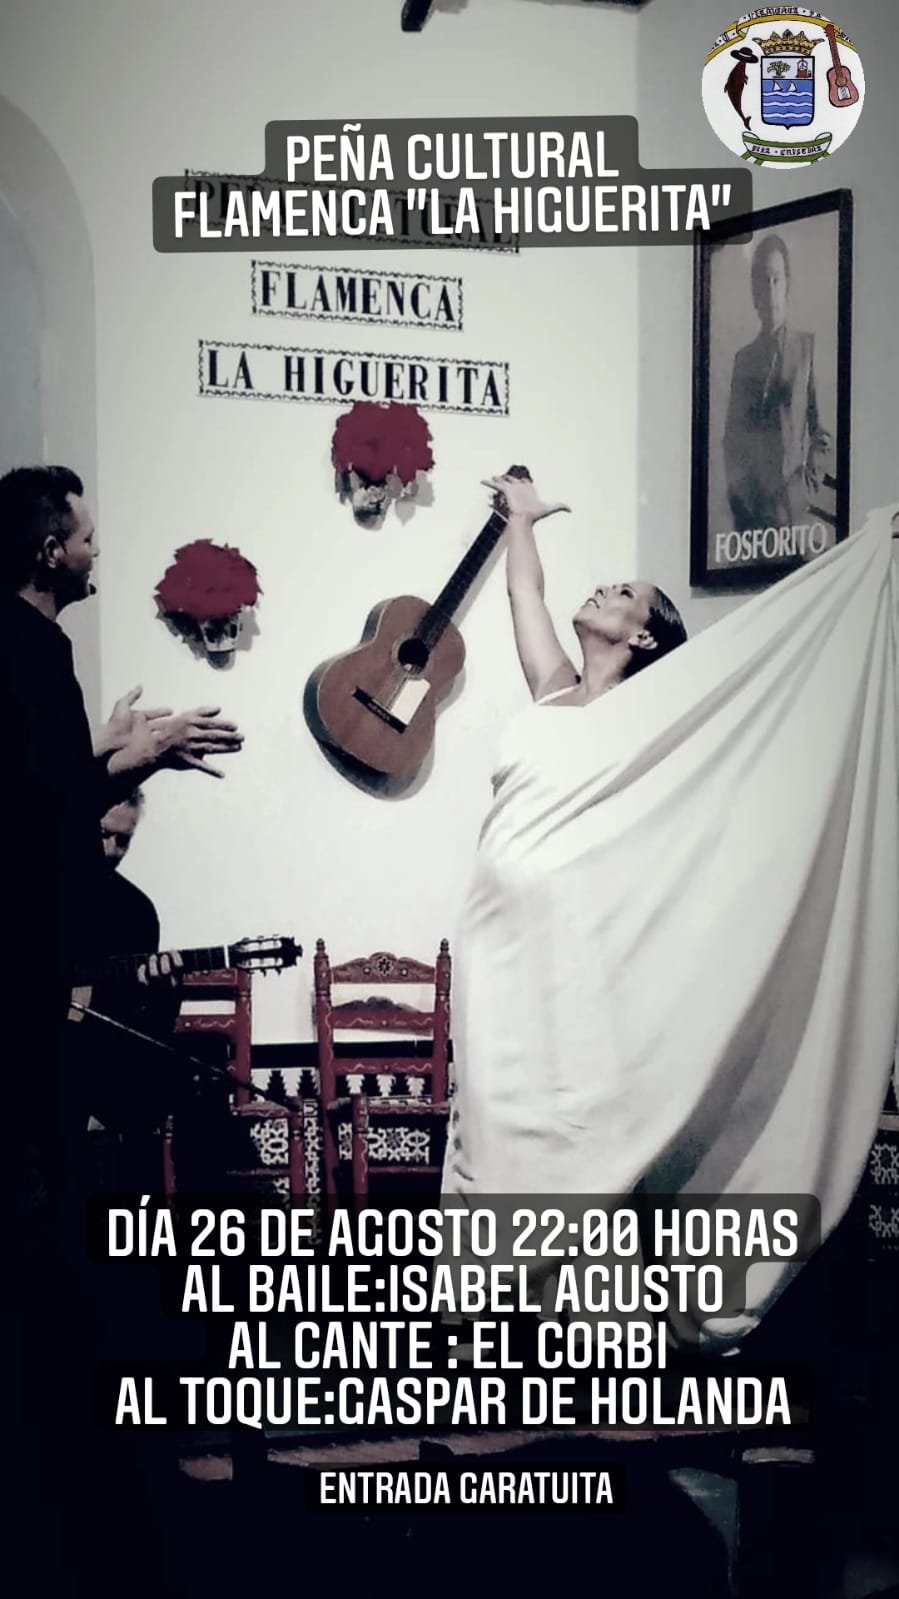 Noche Flamenca en la Peña Cultural “La Higuerita”